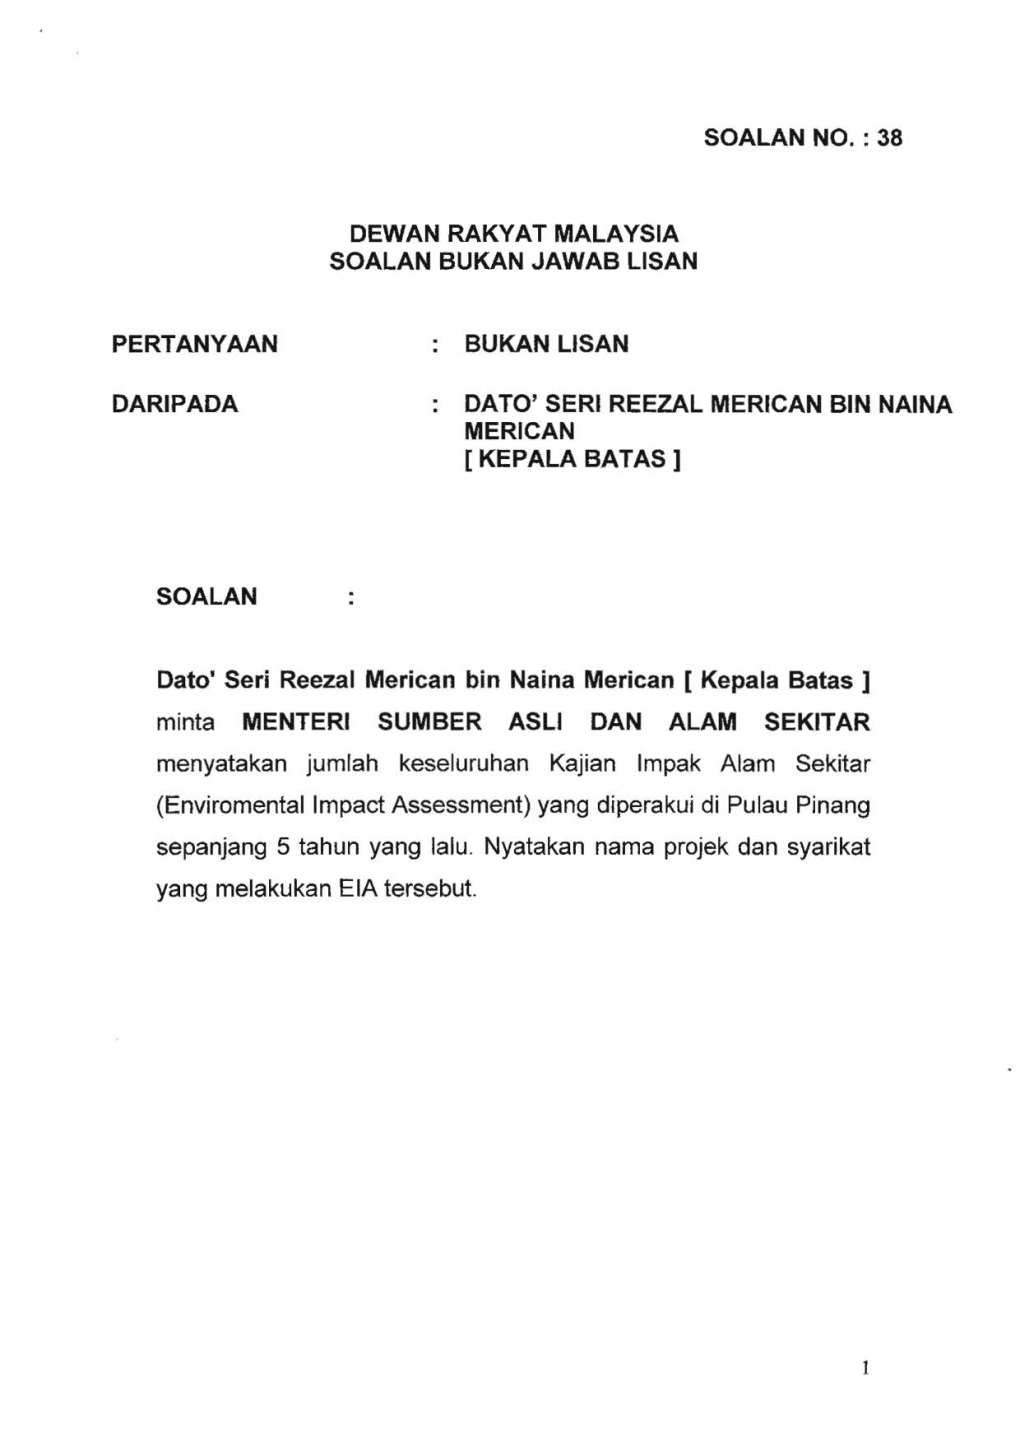 Pertanyaan Daripada So Alan Dewan Rakyat Malaysia Soalan Bukan Jawab Lisan Bukan Lisan Soalan No. : 38 Dato' Seri Reezal Merican